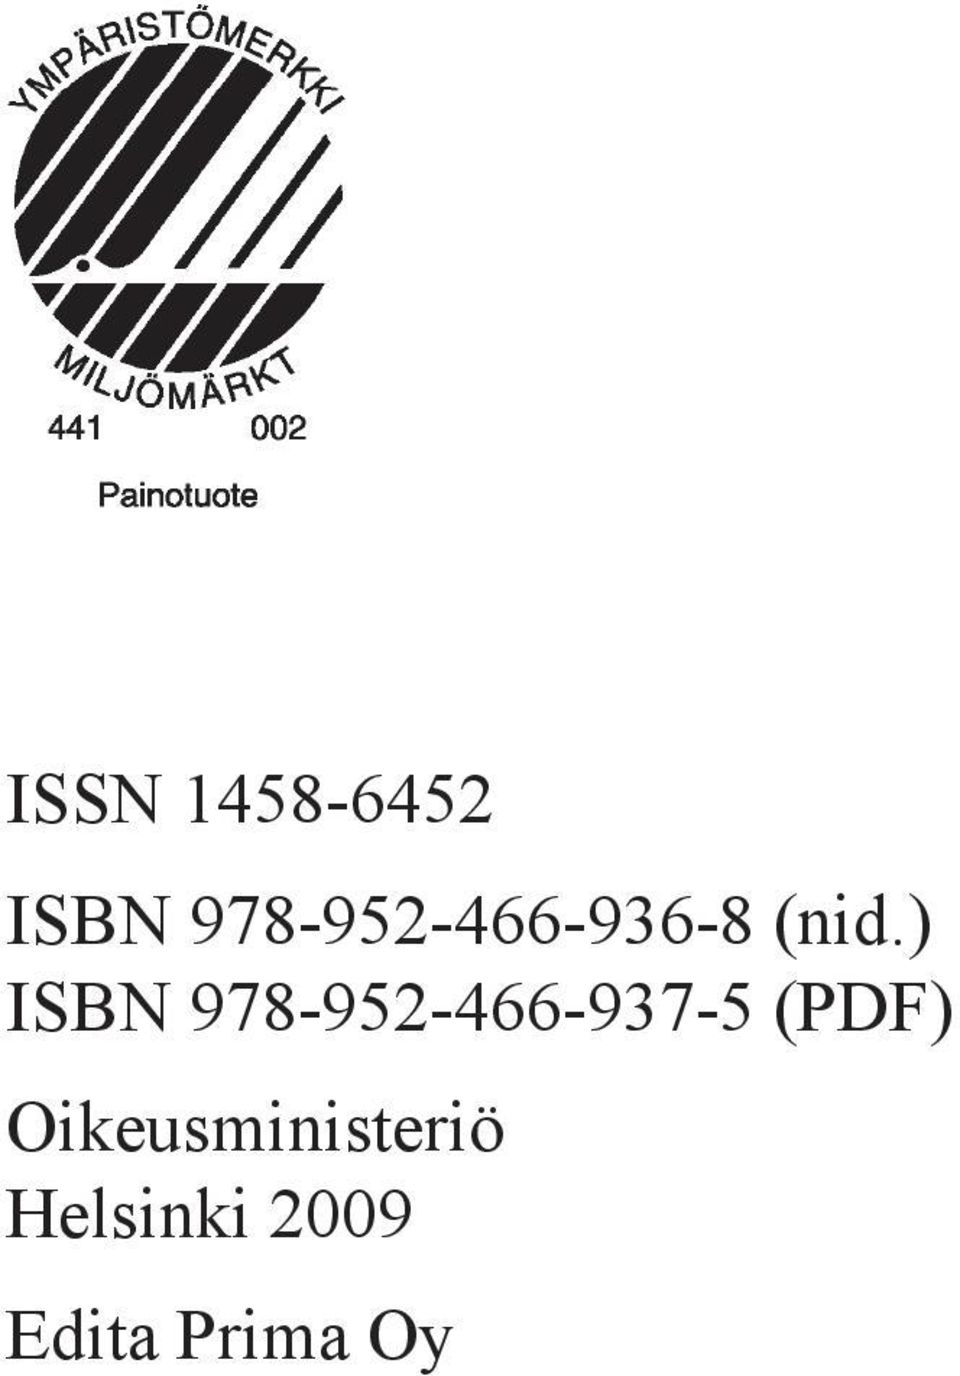 ) ISBN 978-952-466-937-5